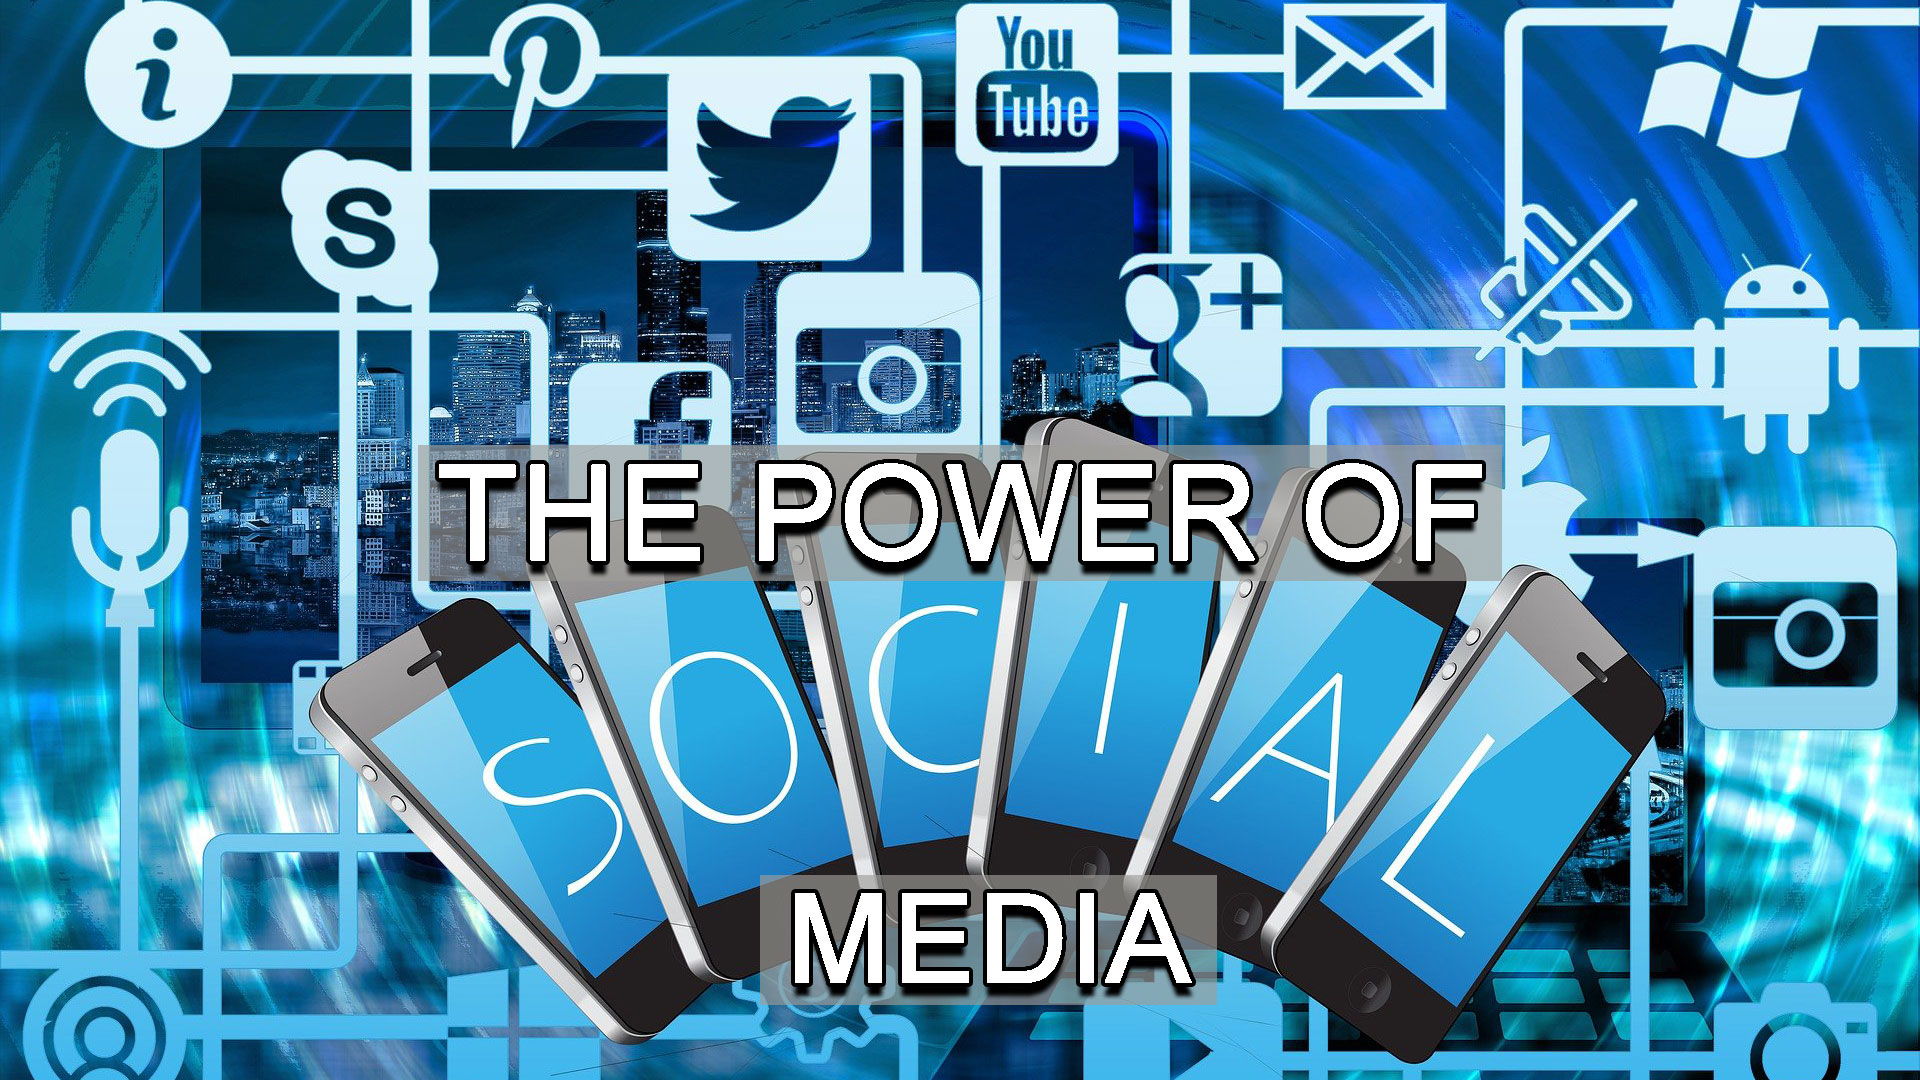 POWER-OF-SOCIAL-MEDIA-S2R-STUDIOS-BLOG